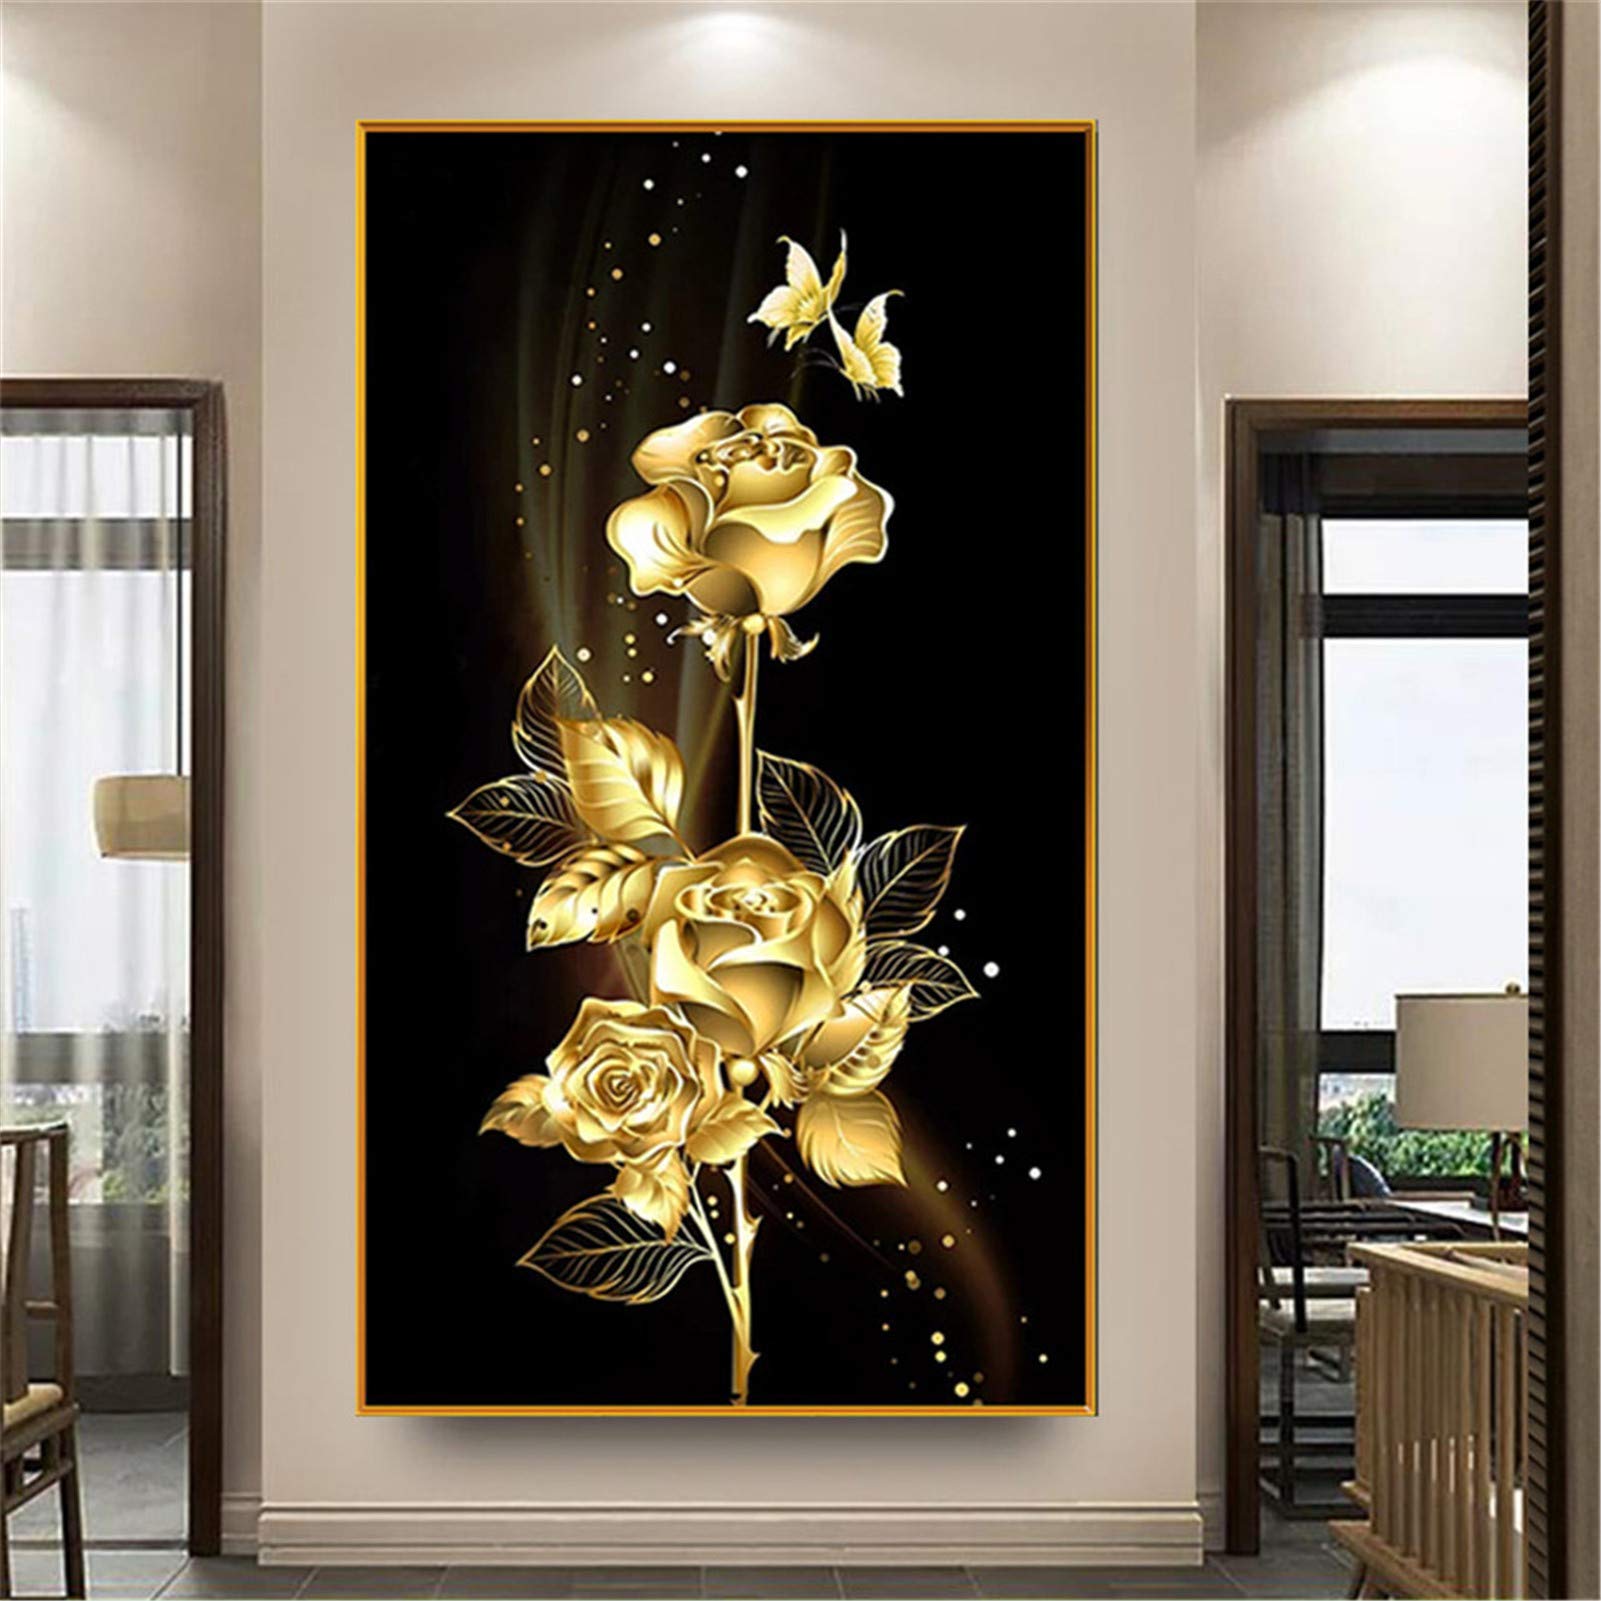 Nicole Knupfer 5D DIY Diamond Painting Set, DIY 5D Diamant Malerei, Rose, Flowers and Schmetterling Bilder Kunst Handwerk für Home Wall Decor (60x110cm)